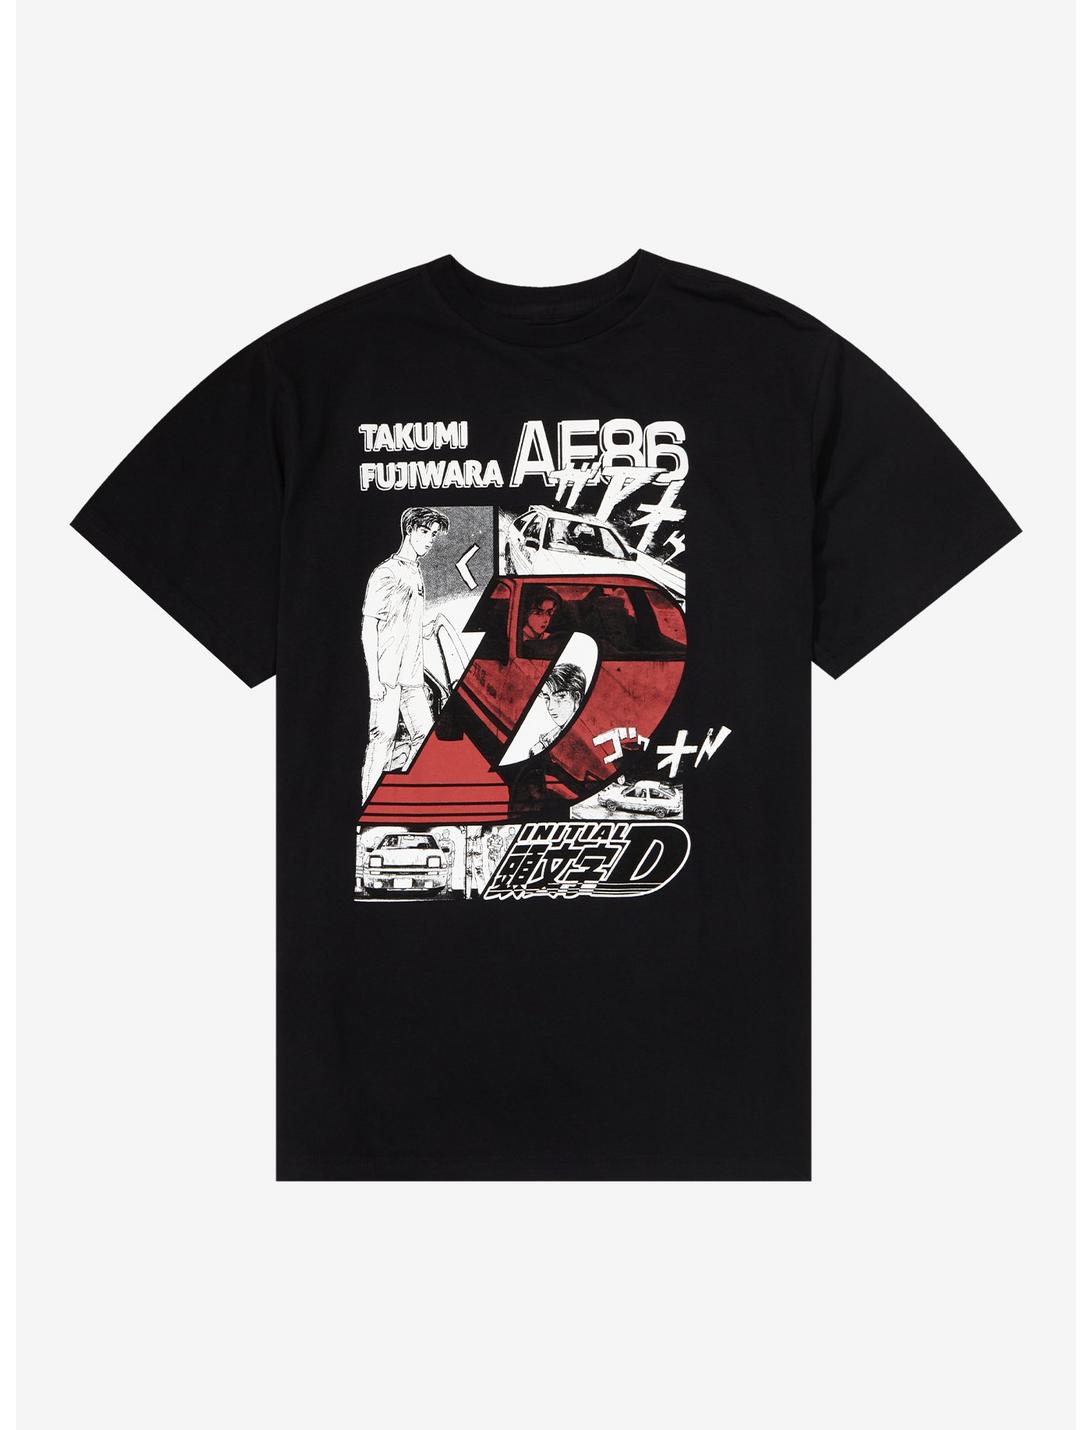 Initial D AE86 Takumi Fujiwara T-Shirt, BLACK, hi-res